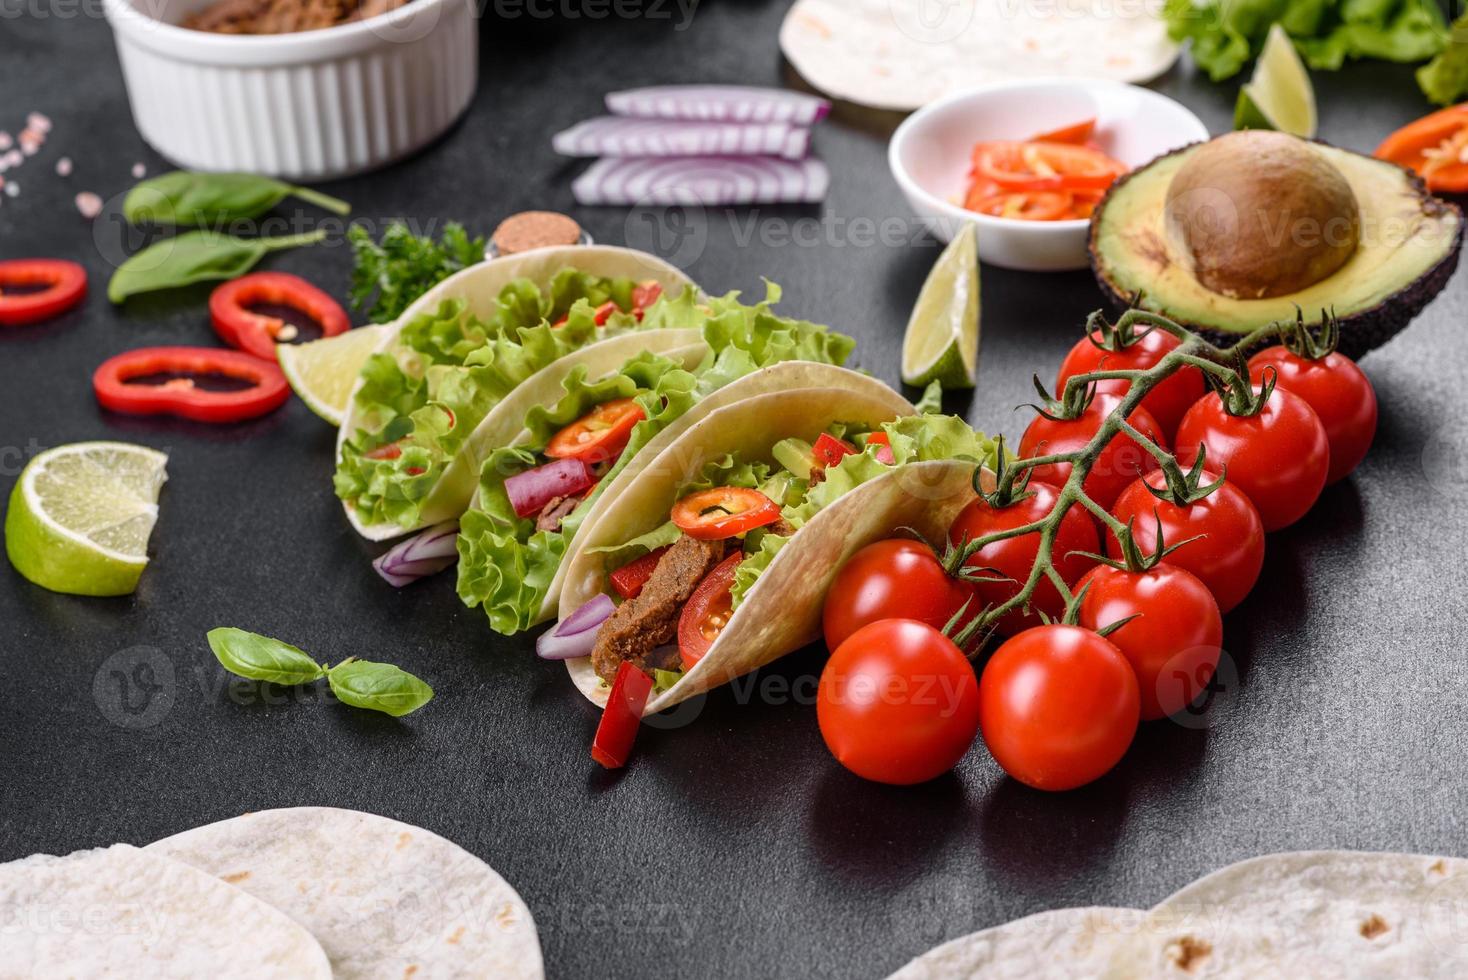 mexikansk tacos med nötkött, tomater, avokado, lök och salsasås foto